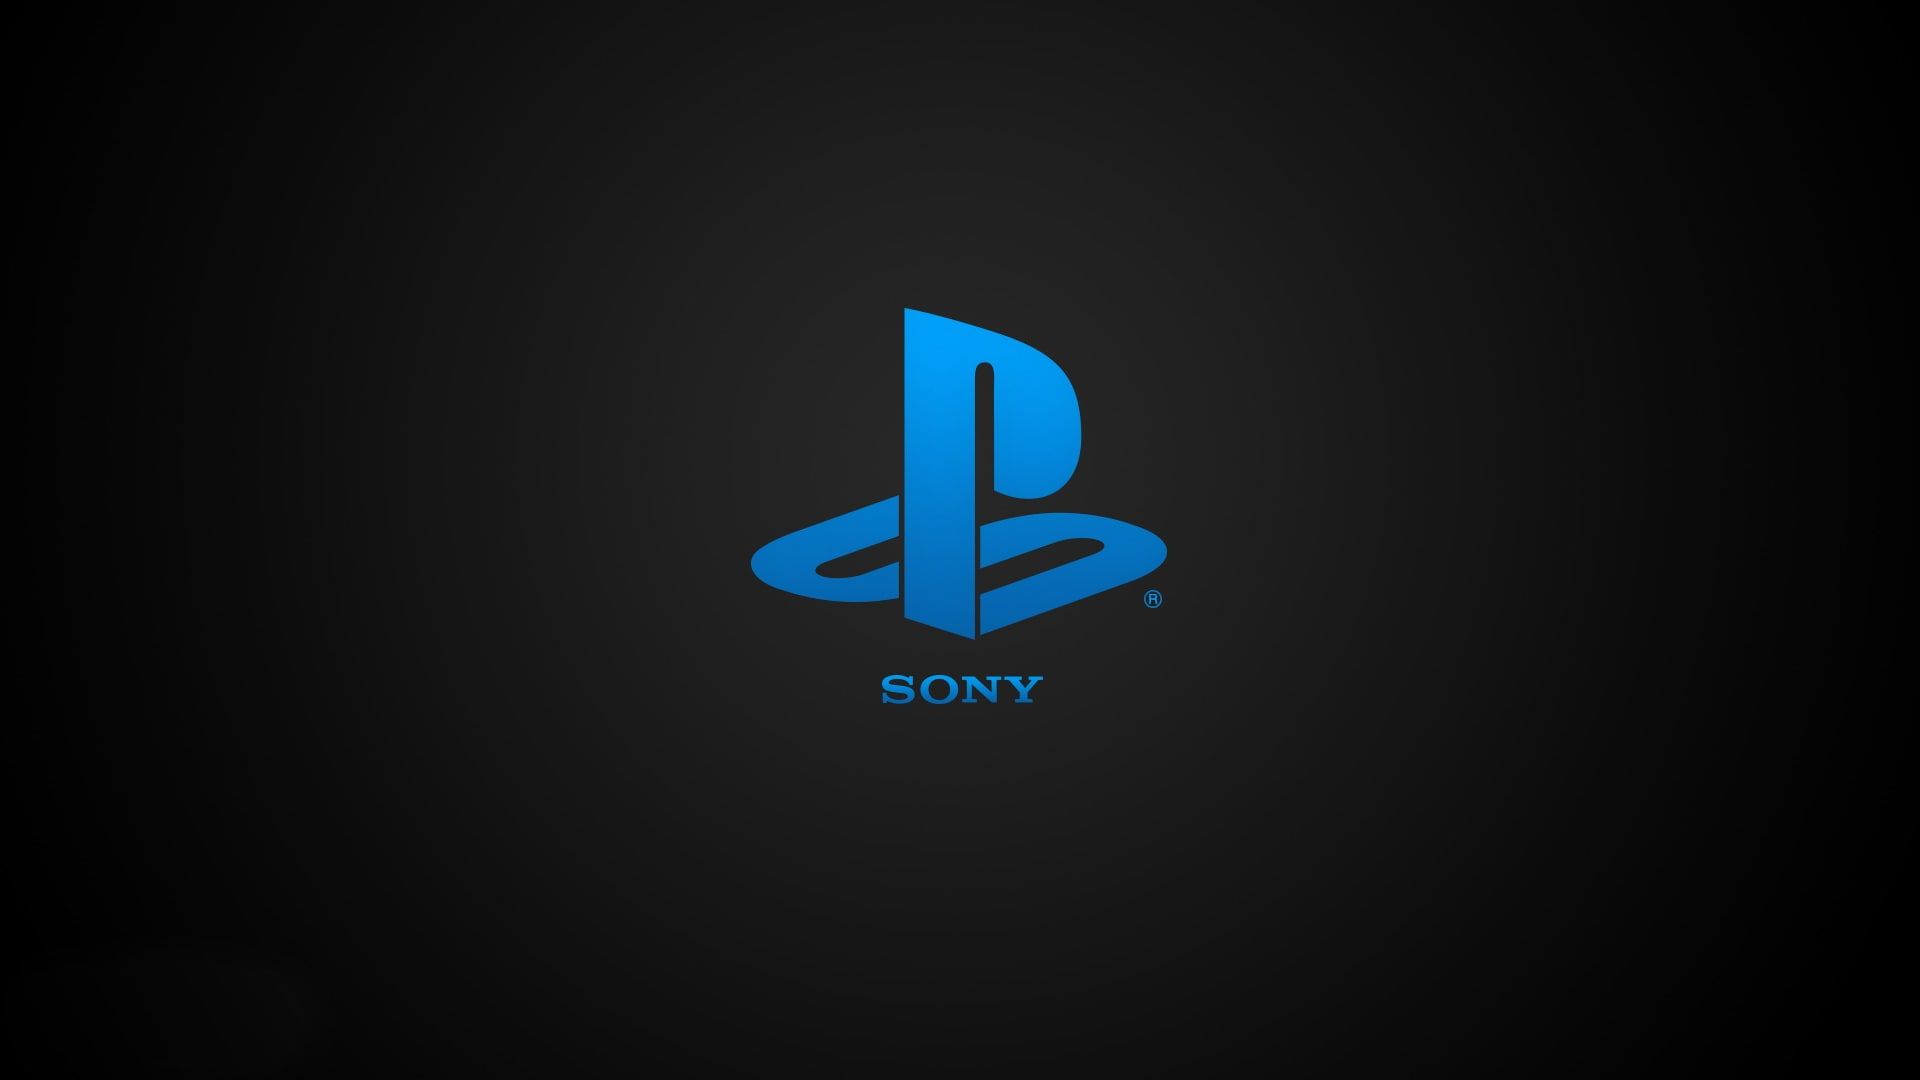 Sony Playstation blue logo #Sony #Playstation #Blue #Logo P #wallpaper #hdwallpaper #desktop. Sony playstation, Playstation, Playstation logo